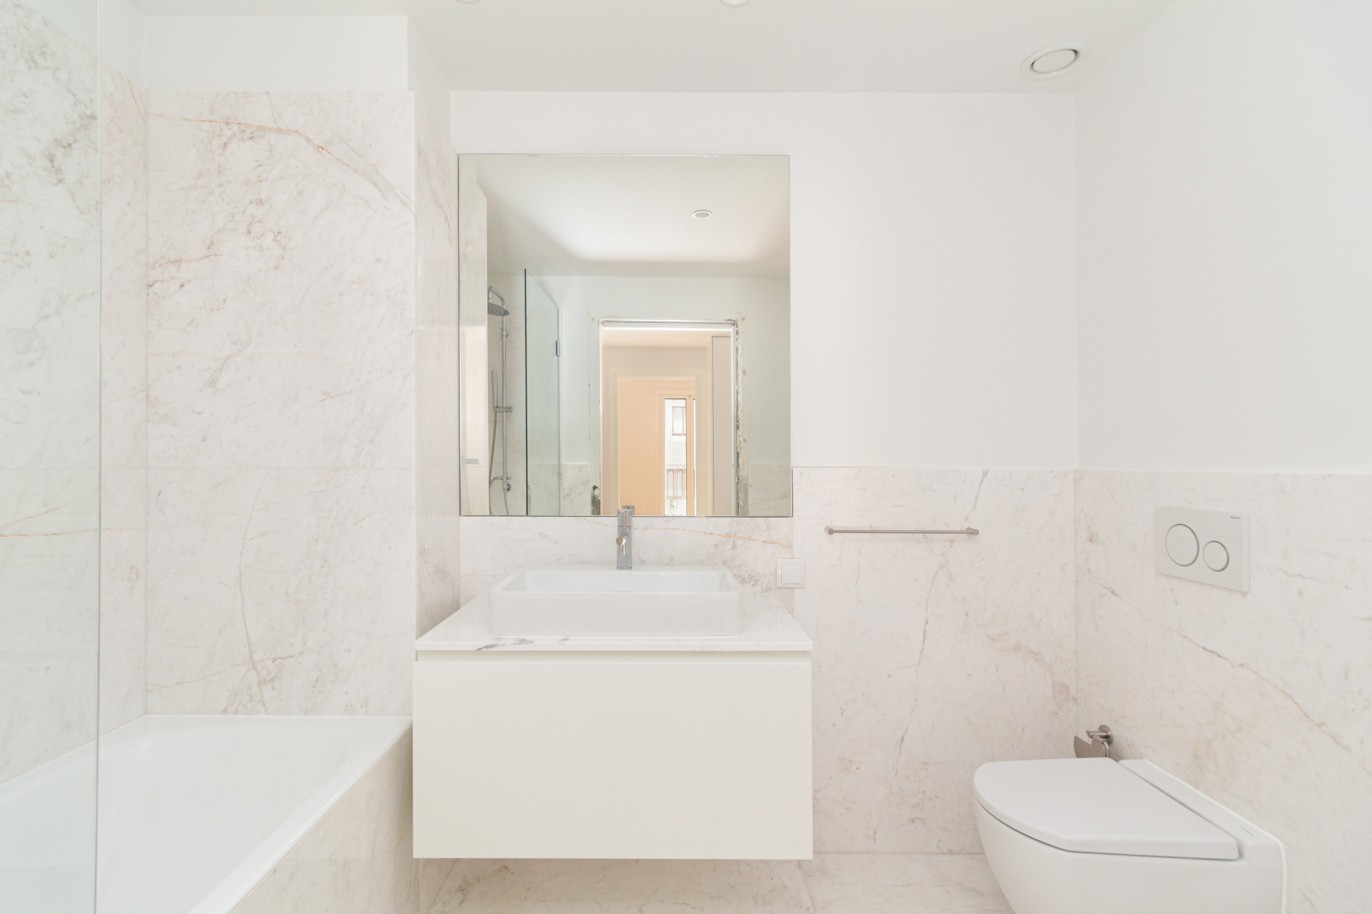 New 2 bedroom villa in private condominium, for rent, near the river, Porto, Portugal_217218